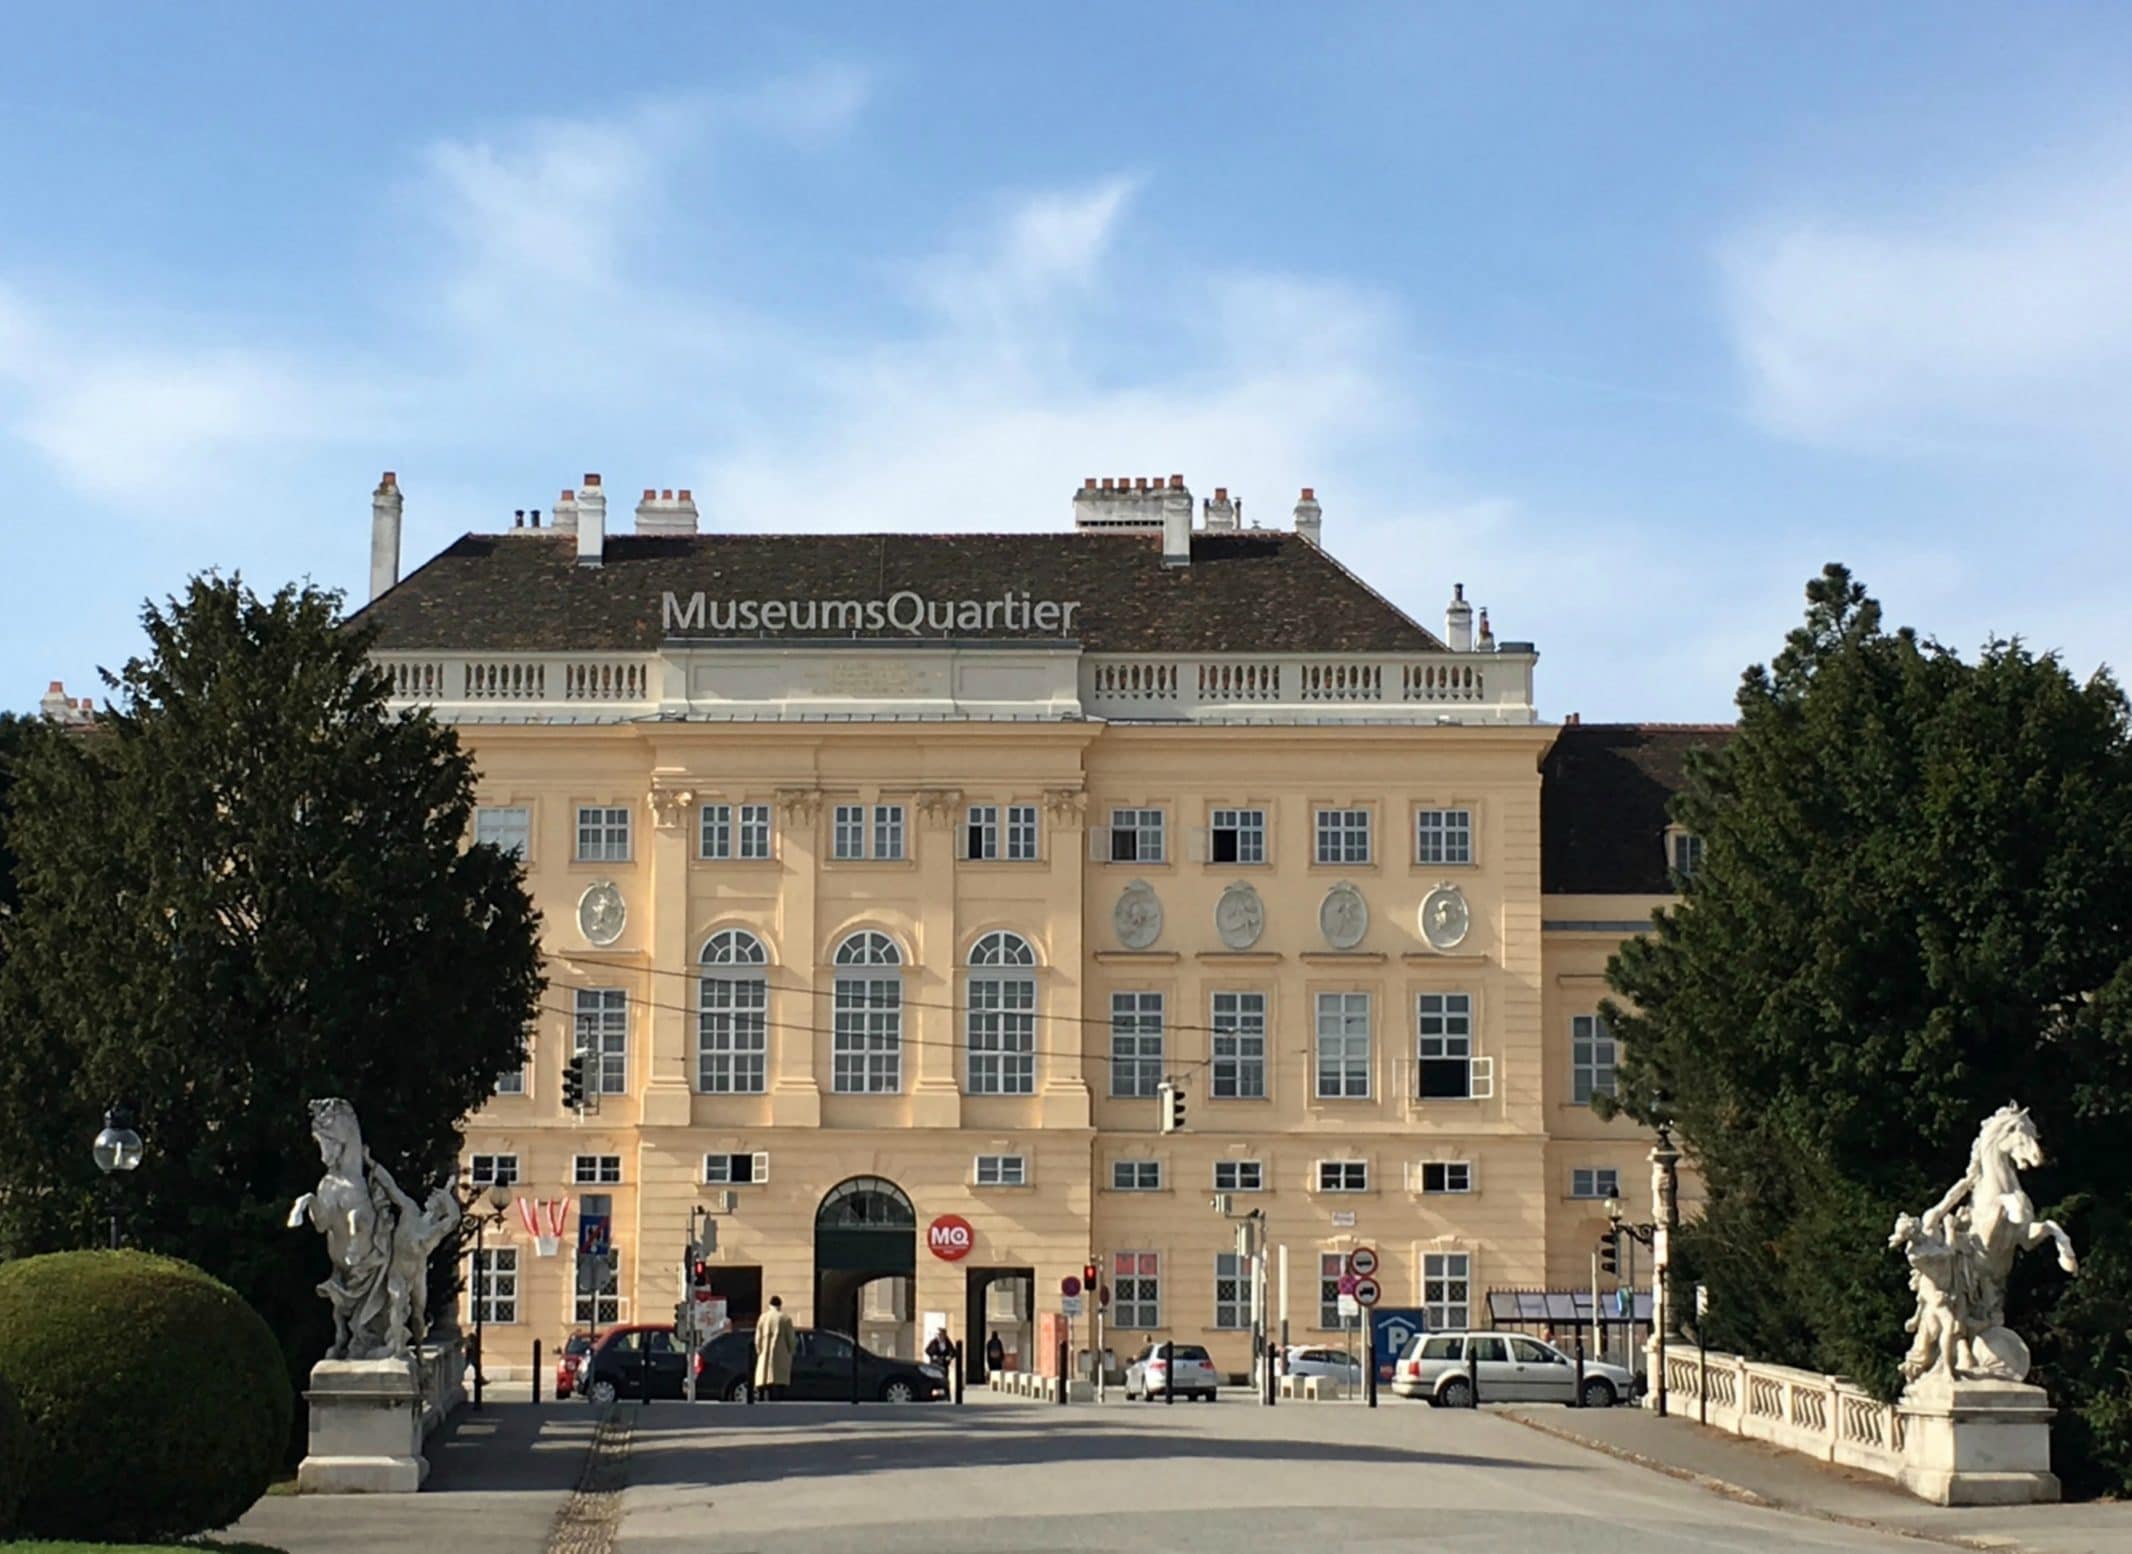 Museums Quartier Vienna